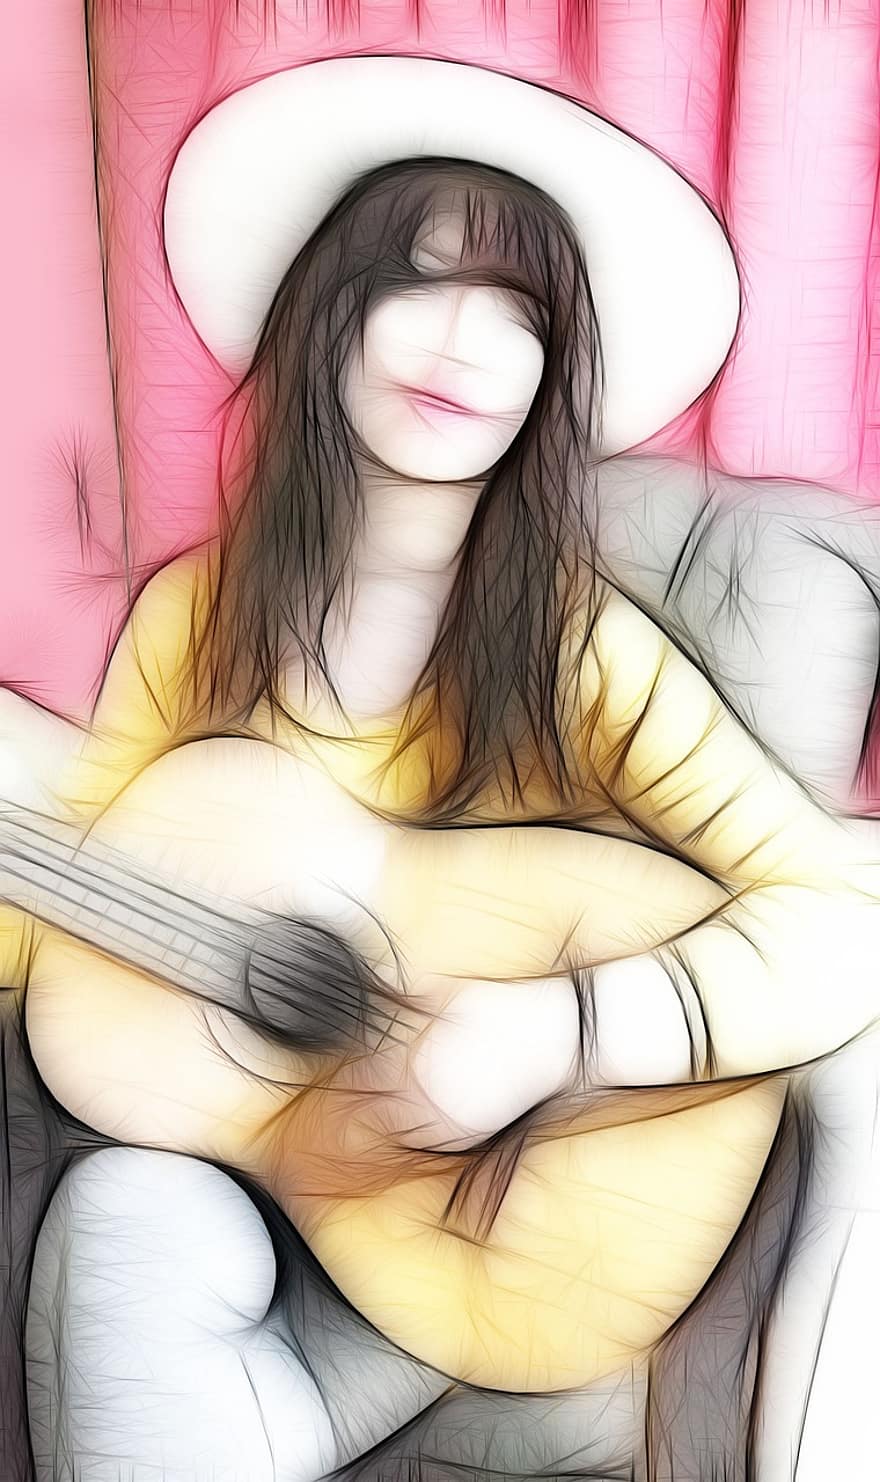 gitara, dziewczynka, muzyka, instrument, grać na gitarze, instrument muzyczny, kobieta, muzyk, kapelusz